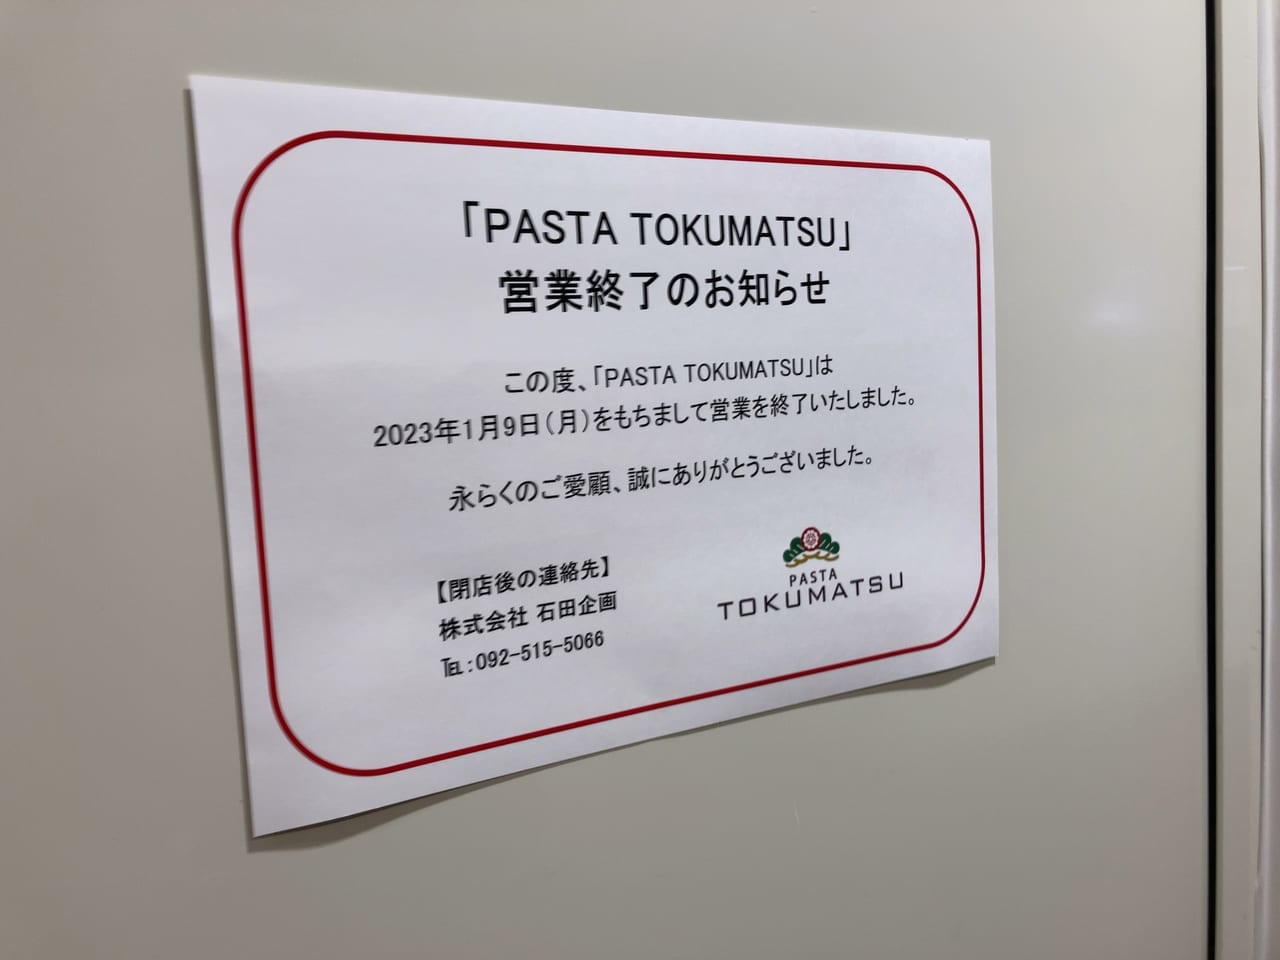 2023年アミュプラザおおいた「PASTA TOKUMATSU」